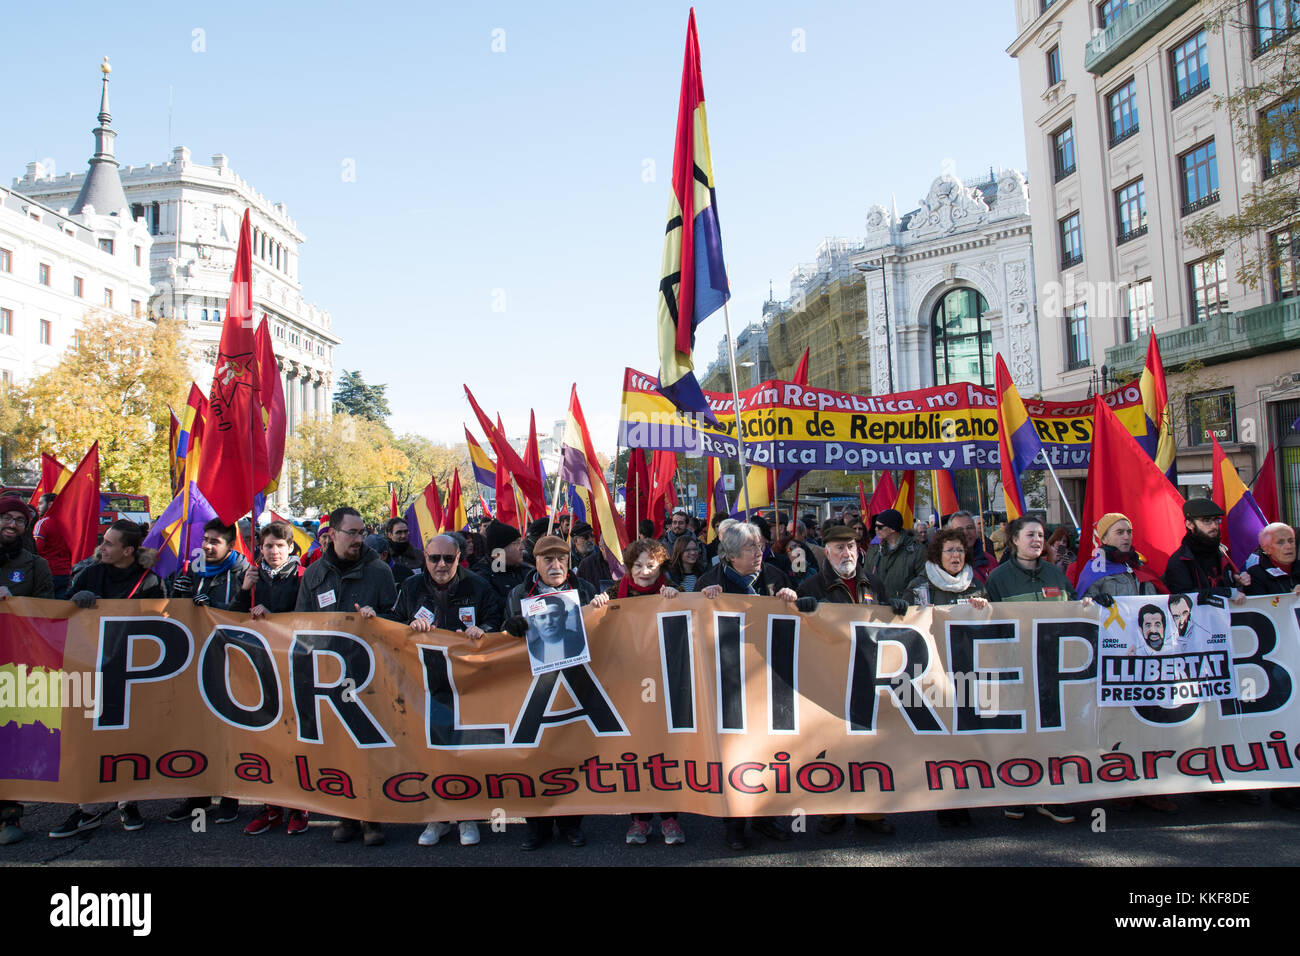 Madrid, Spagna. 6 dicembre, 2017. banner principale della manifestazione svoltasi a Madrid che rivendicano per la terza repubblica spagnola. © valentin sama-rojo/alamy live news. Foto Stock